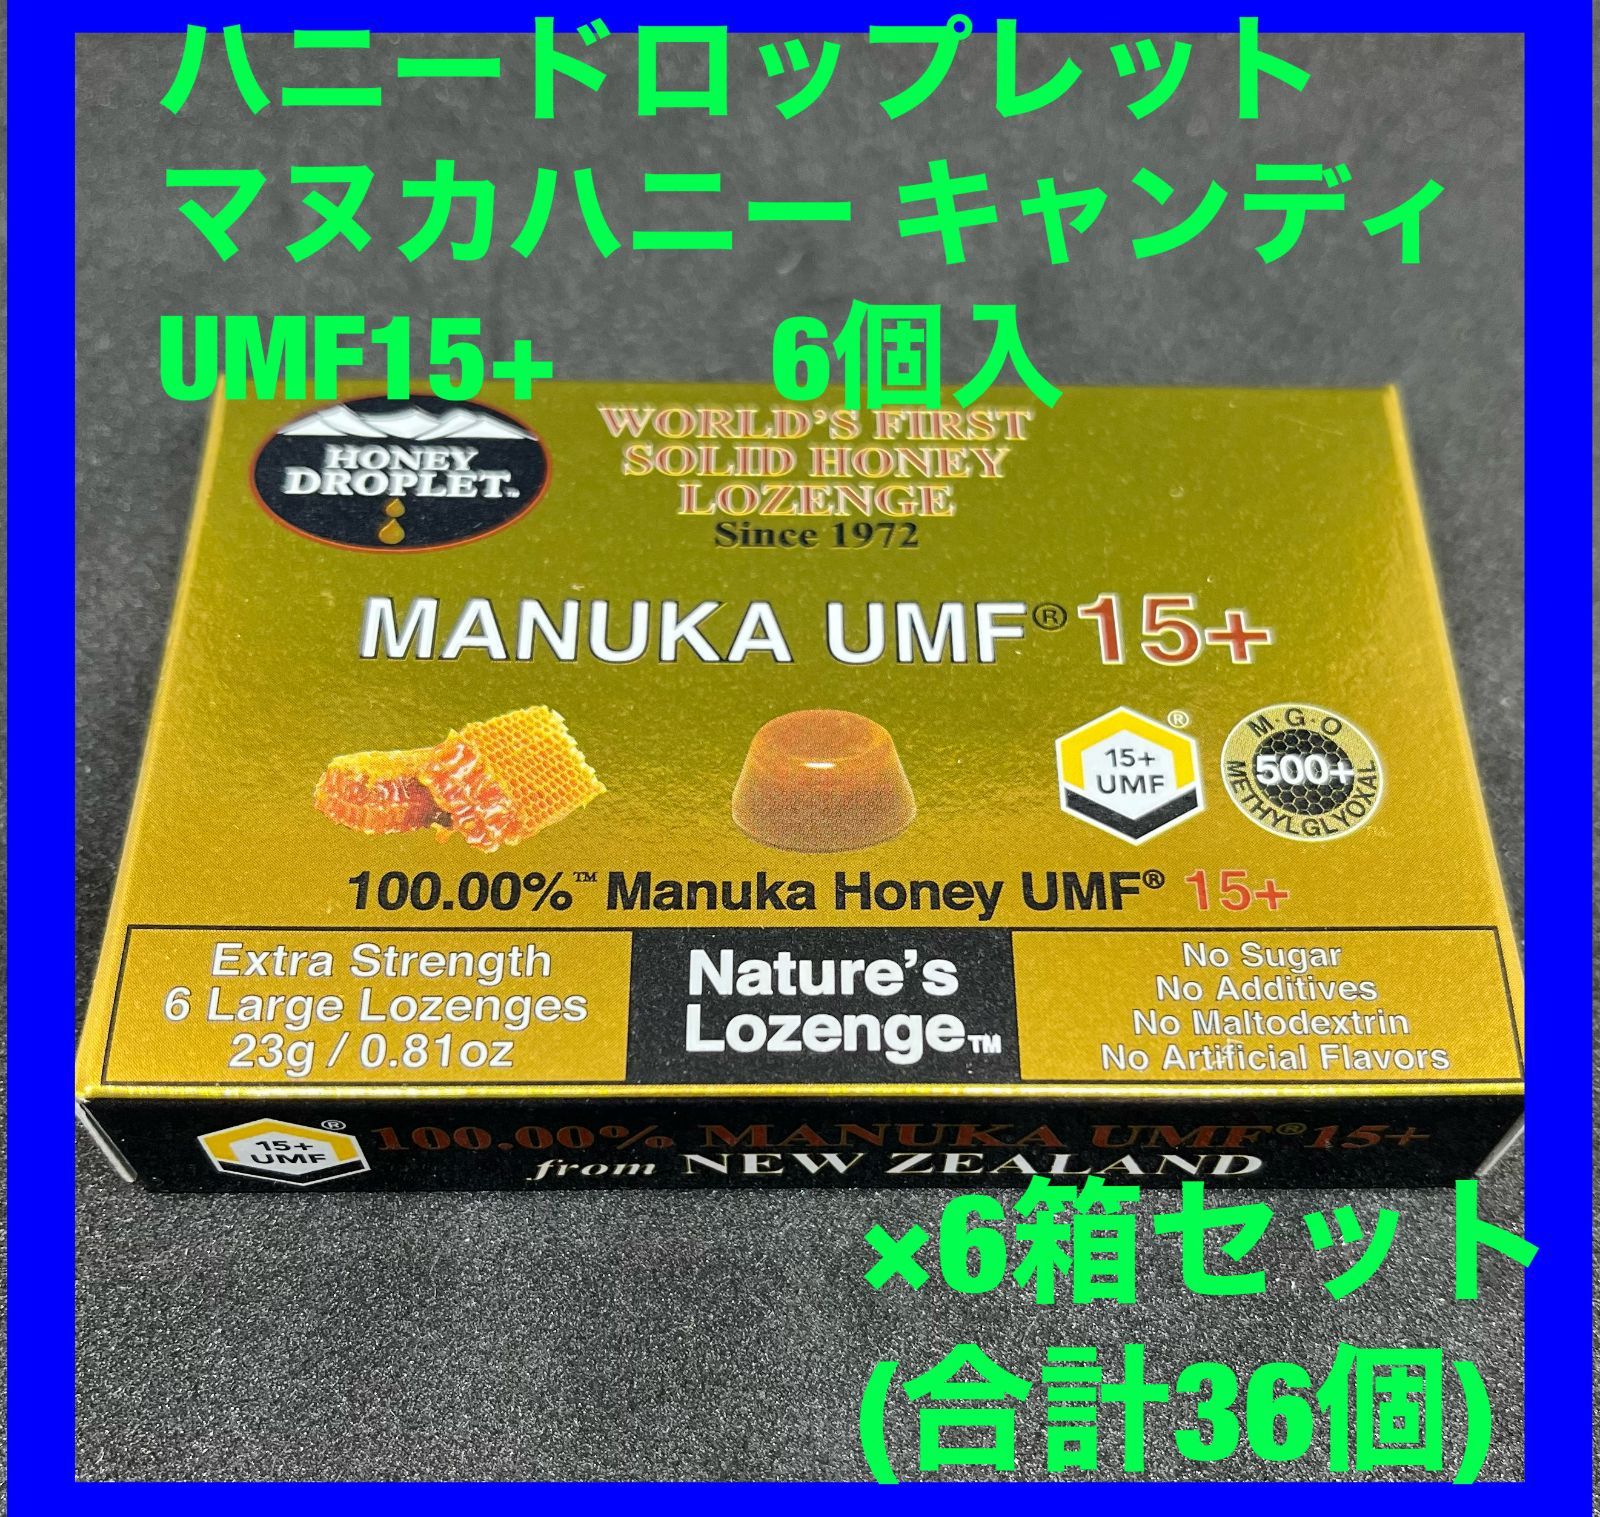 ハニードロップレット マヌカハニーUMF15 (6箱) - スーパーフード